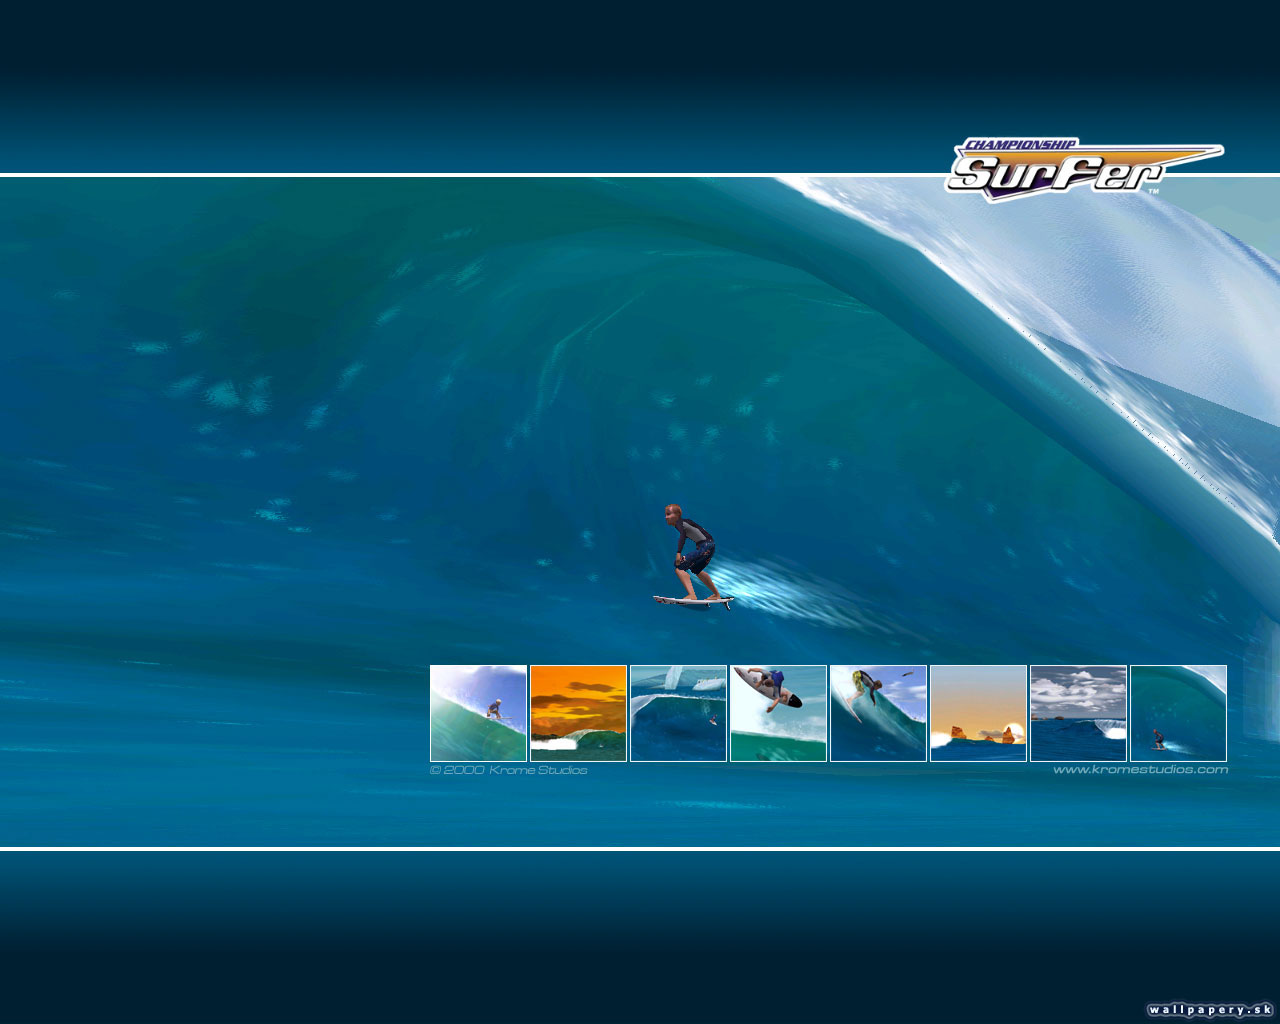 Championship Surfer - wallpaper 4